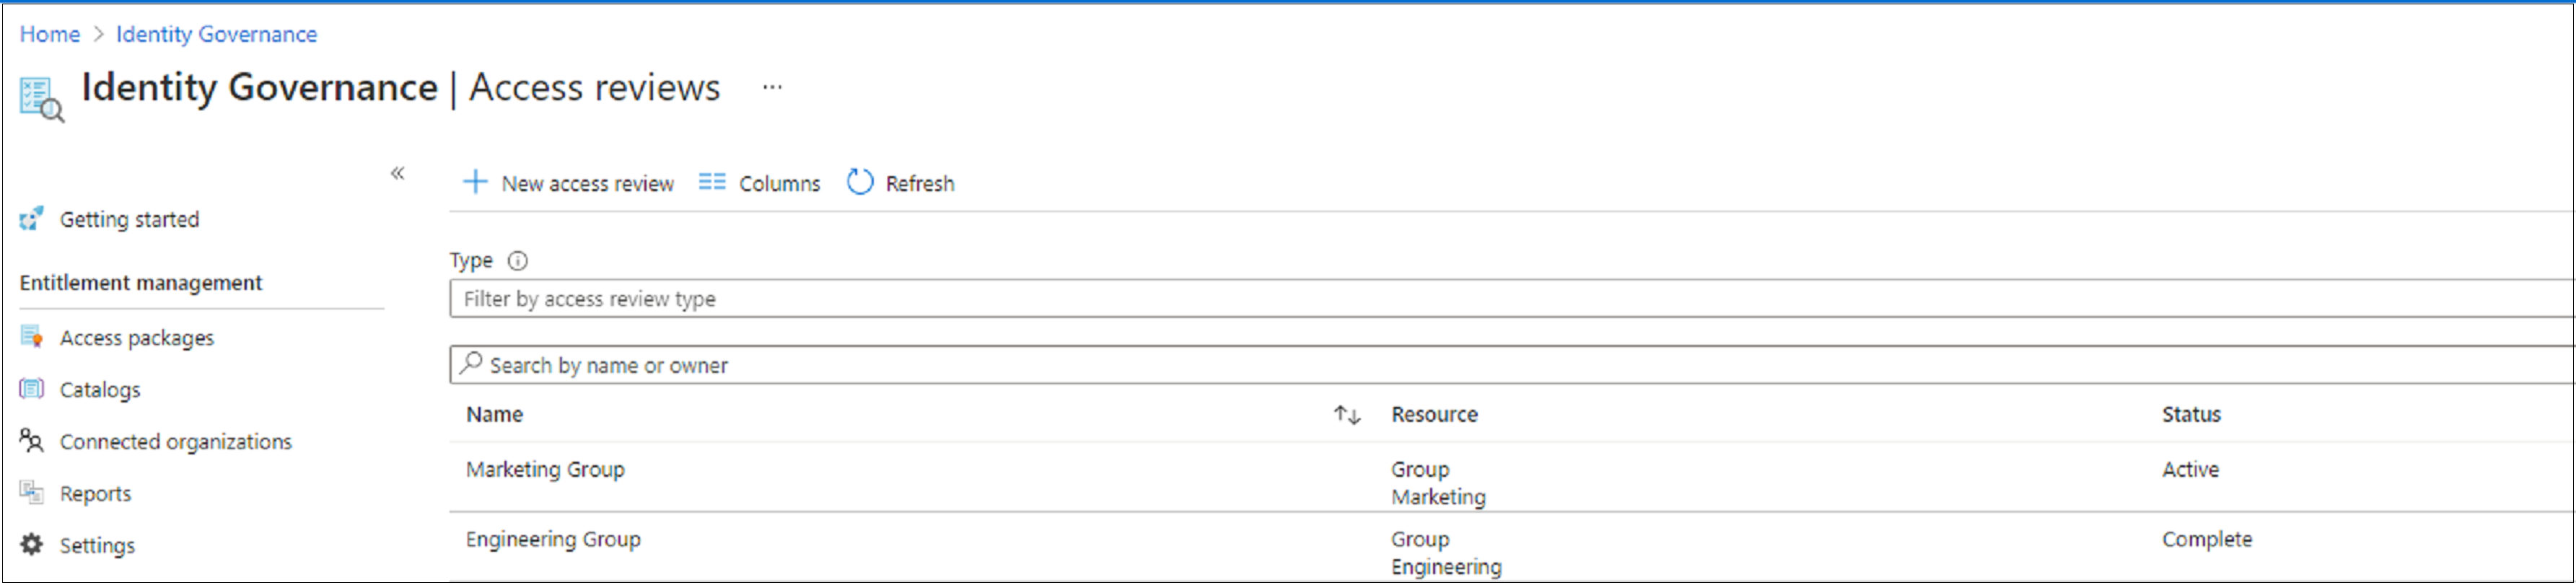 Captura de pantalla que muestra una lista de revisiones de acceso y su estado.